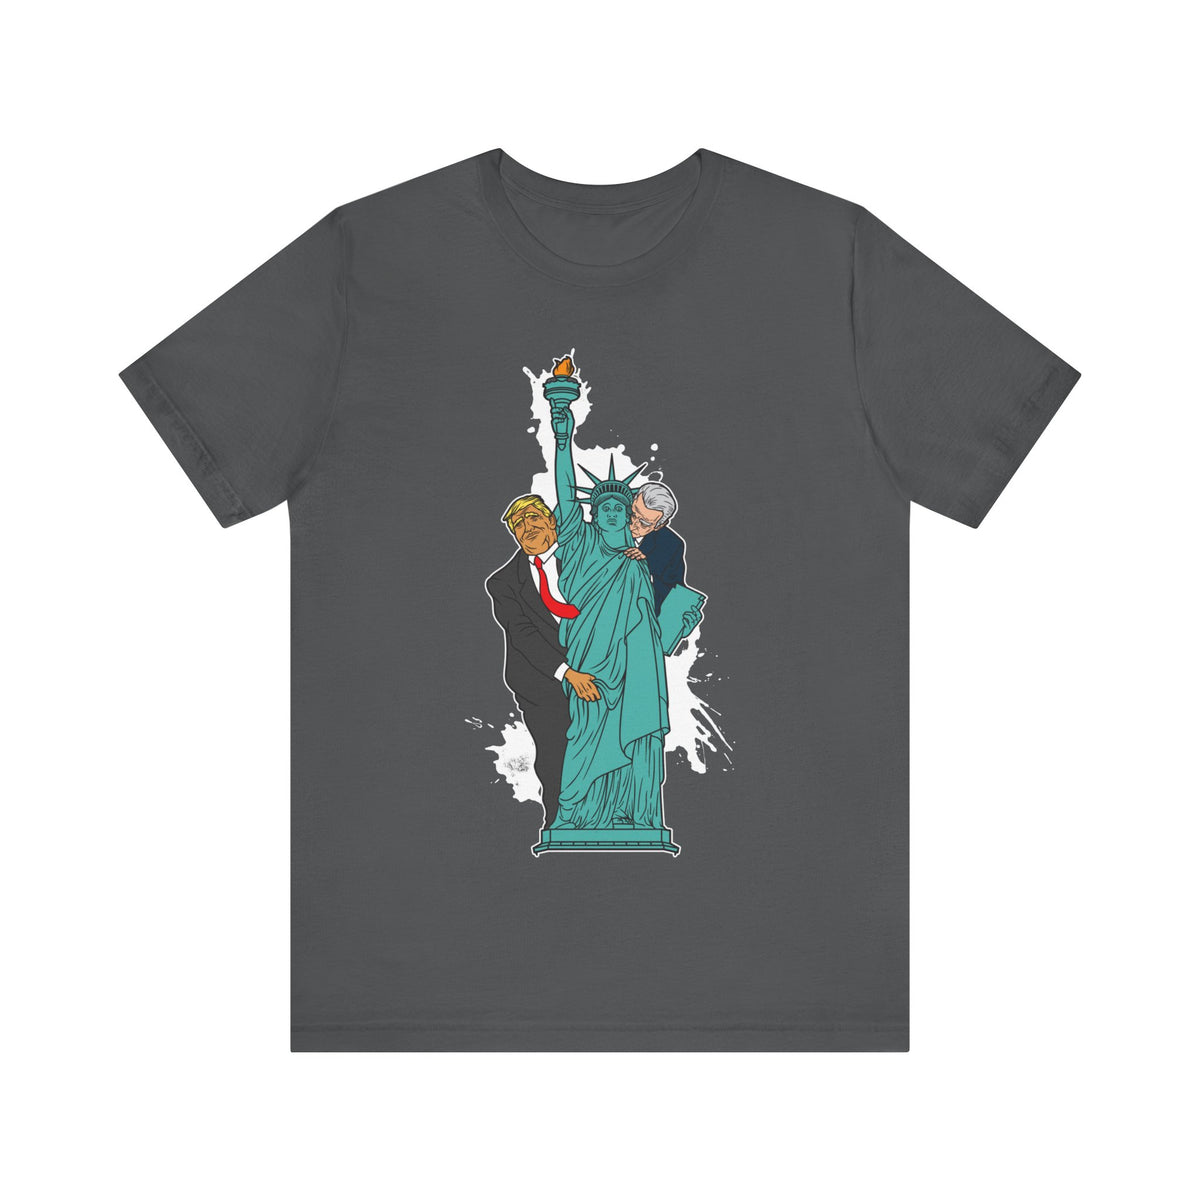 Trump Biden Statue Of Liberty - Menage a Trios - Men's T-Shirt